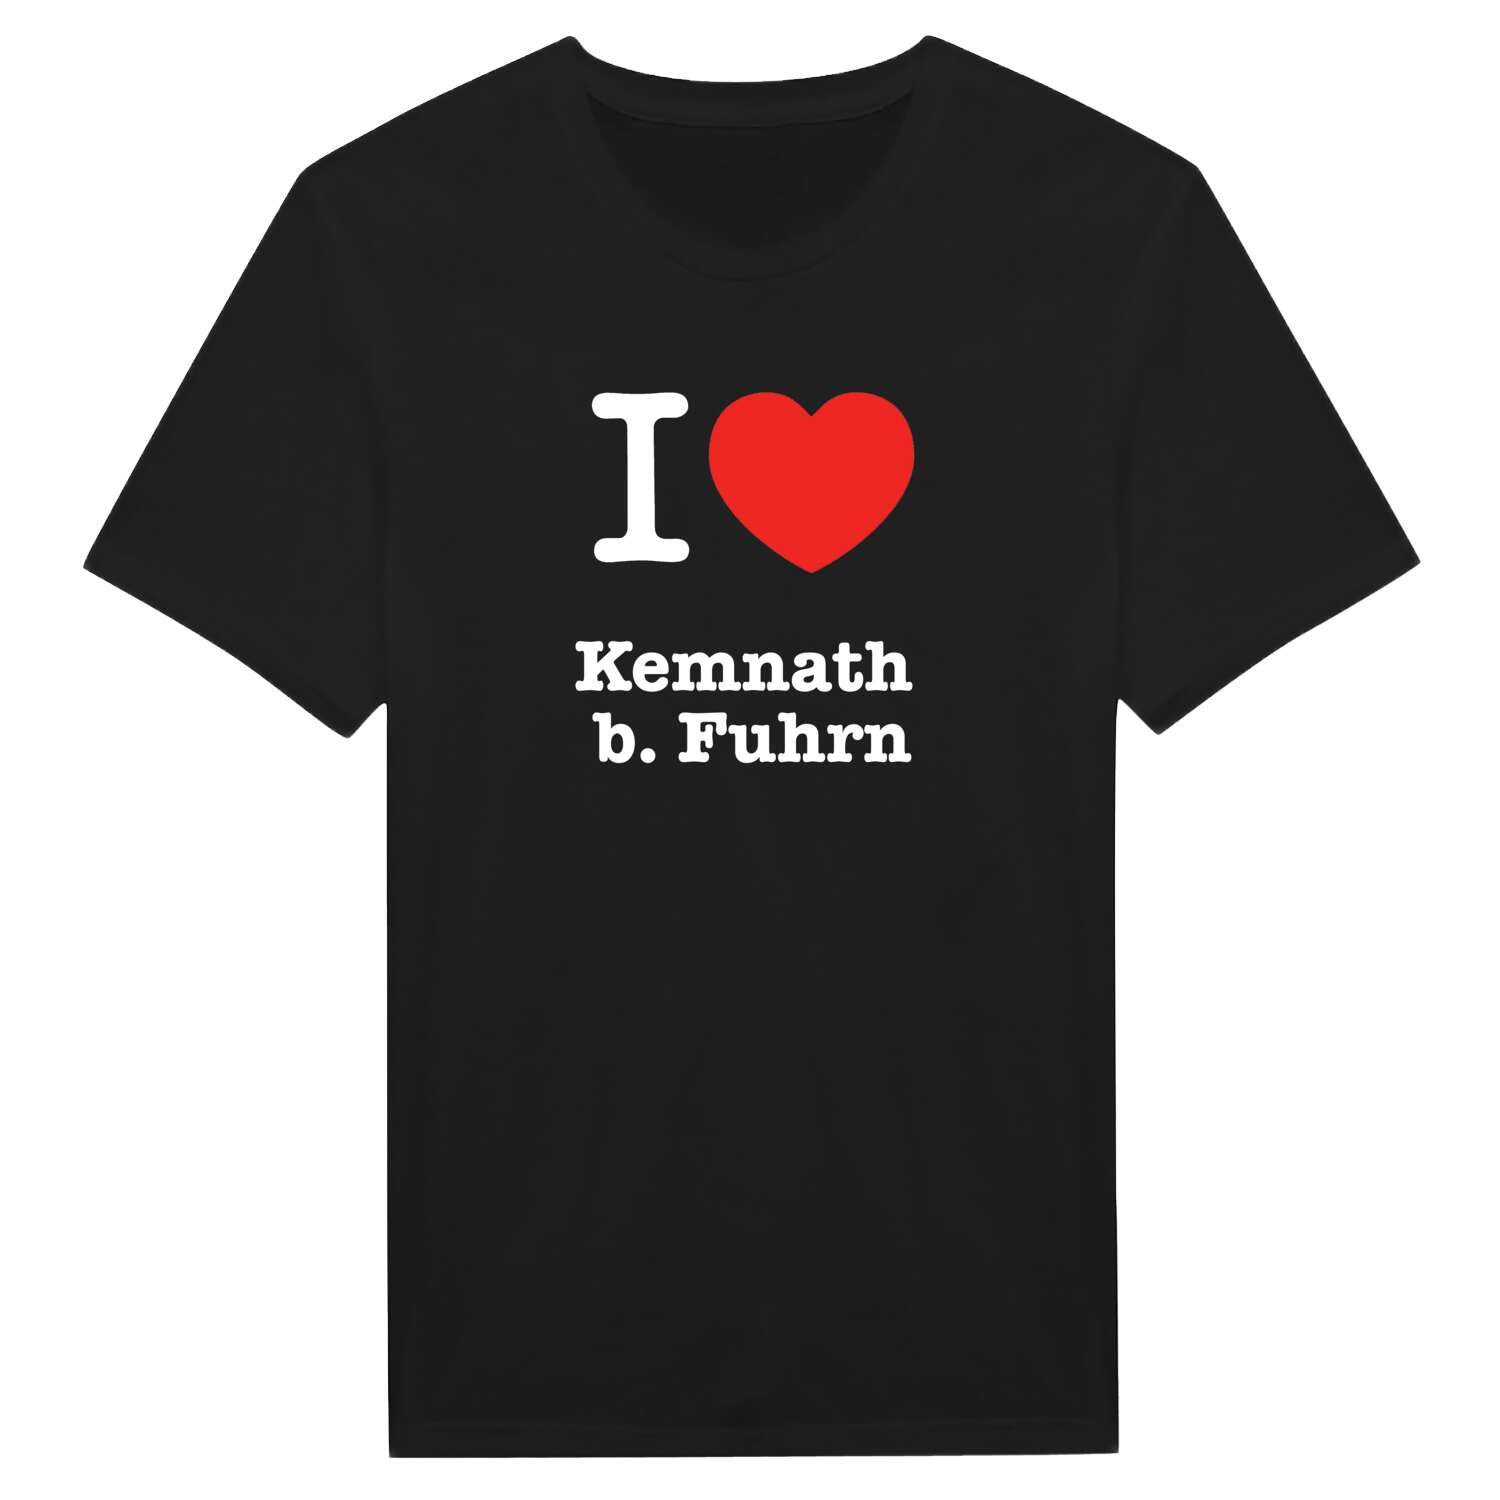 Kemnath b. Fuhrn T-Shirt »I love«